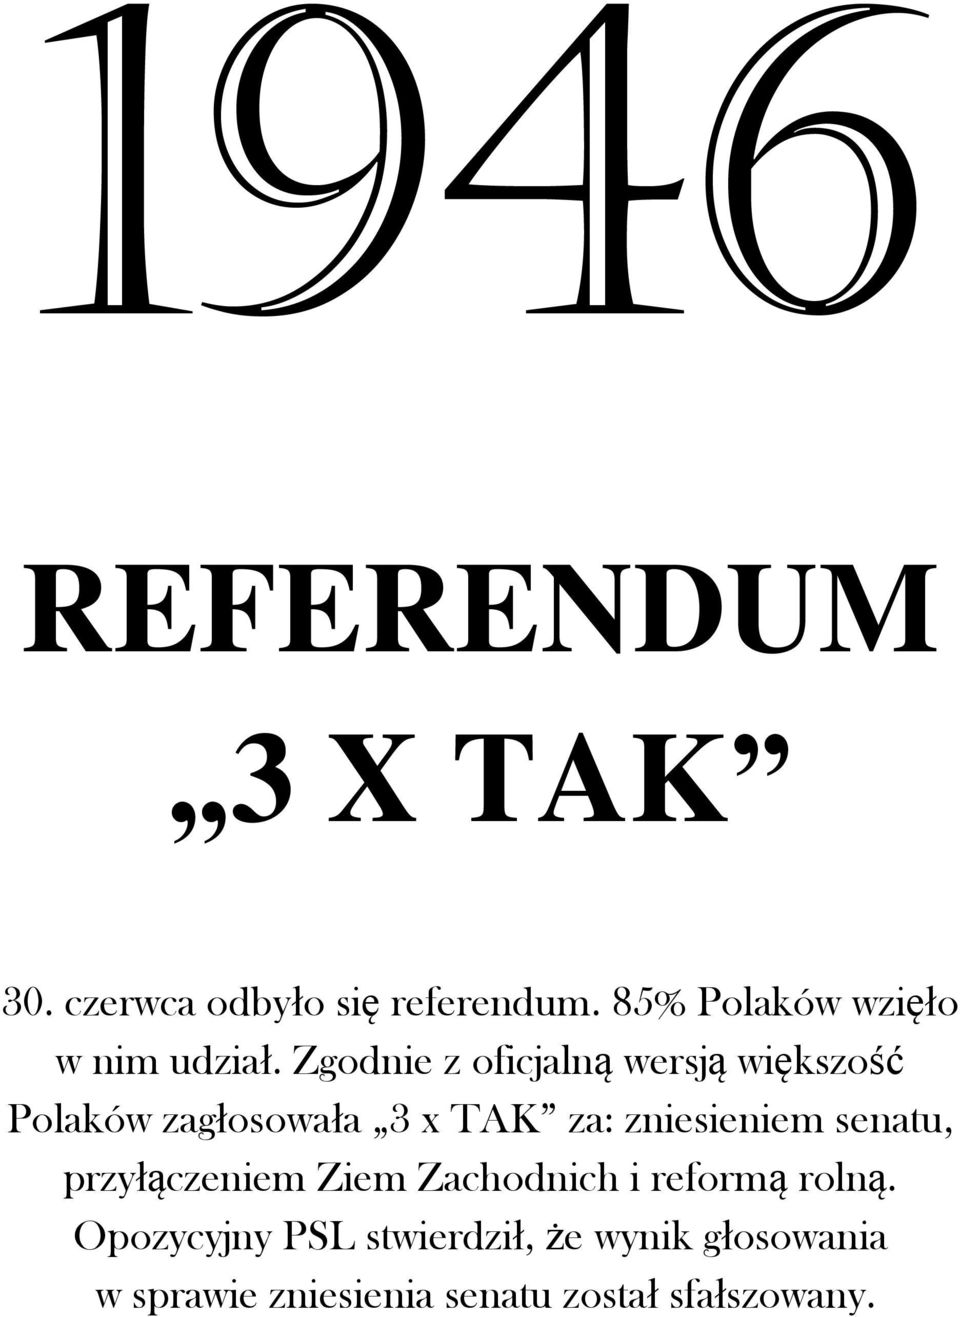 Zgodnie z oficjalną wersją większość Polaków zagłosowała 3 x TAK za: zniesieniem